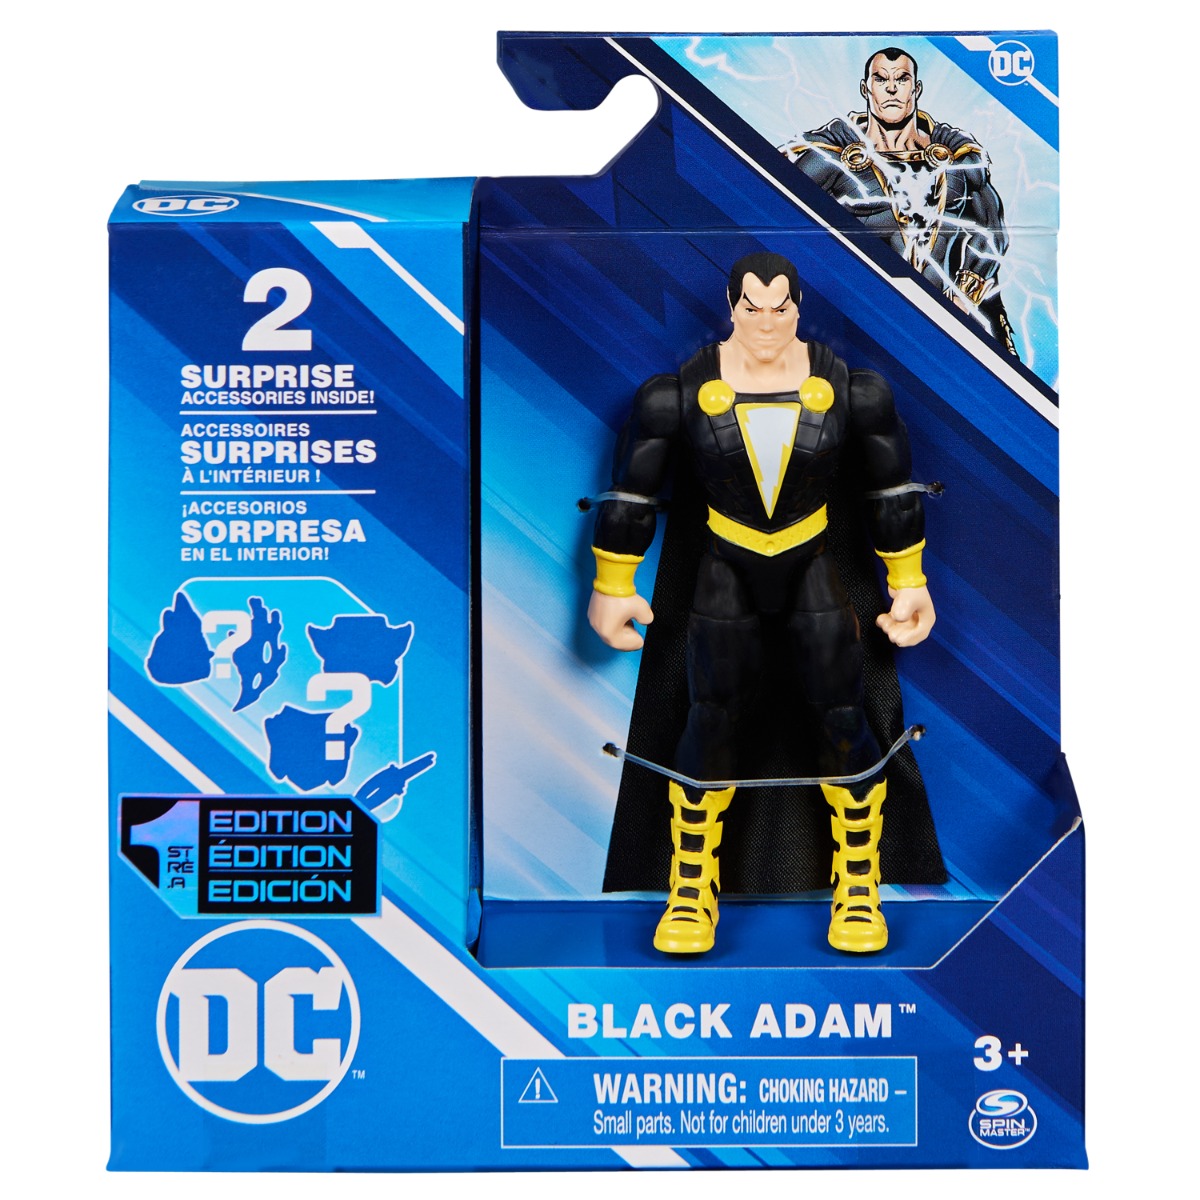 Figurina cu 2 accesorii surpriza, DC Universe, Black Adam, 10 cm, 20144127